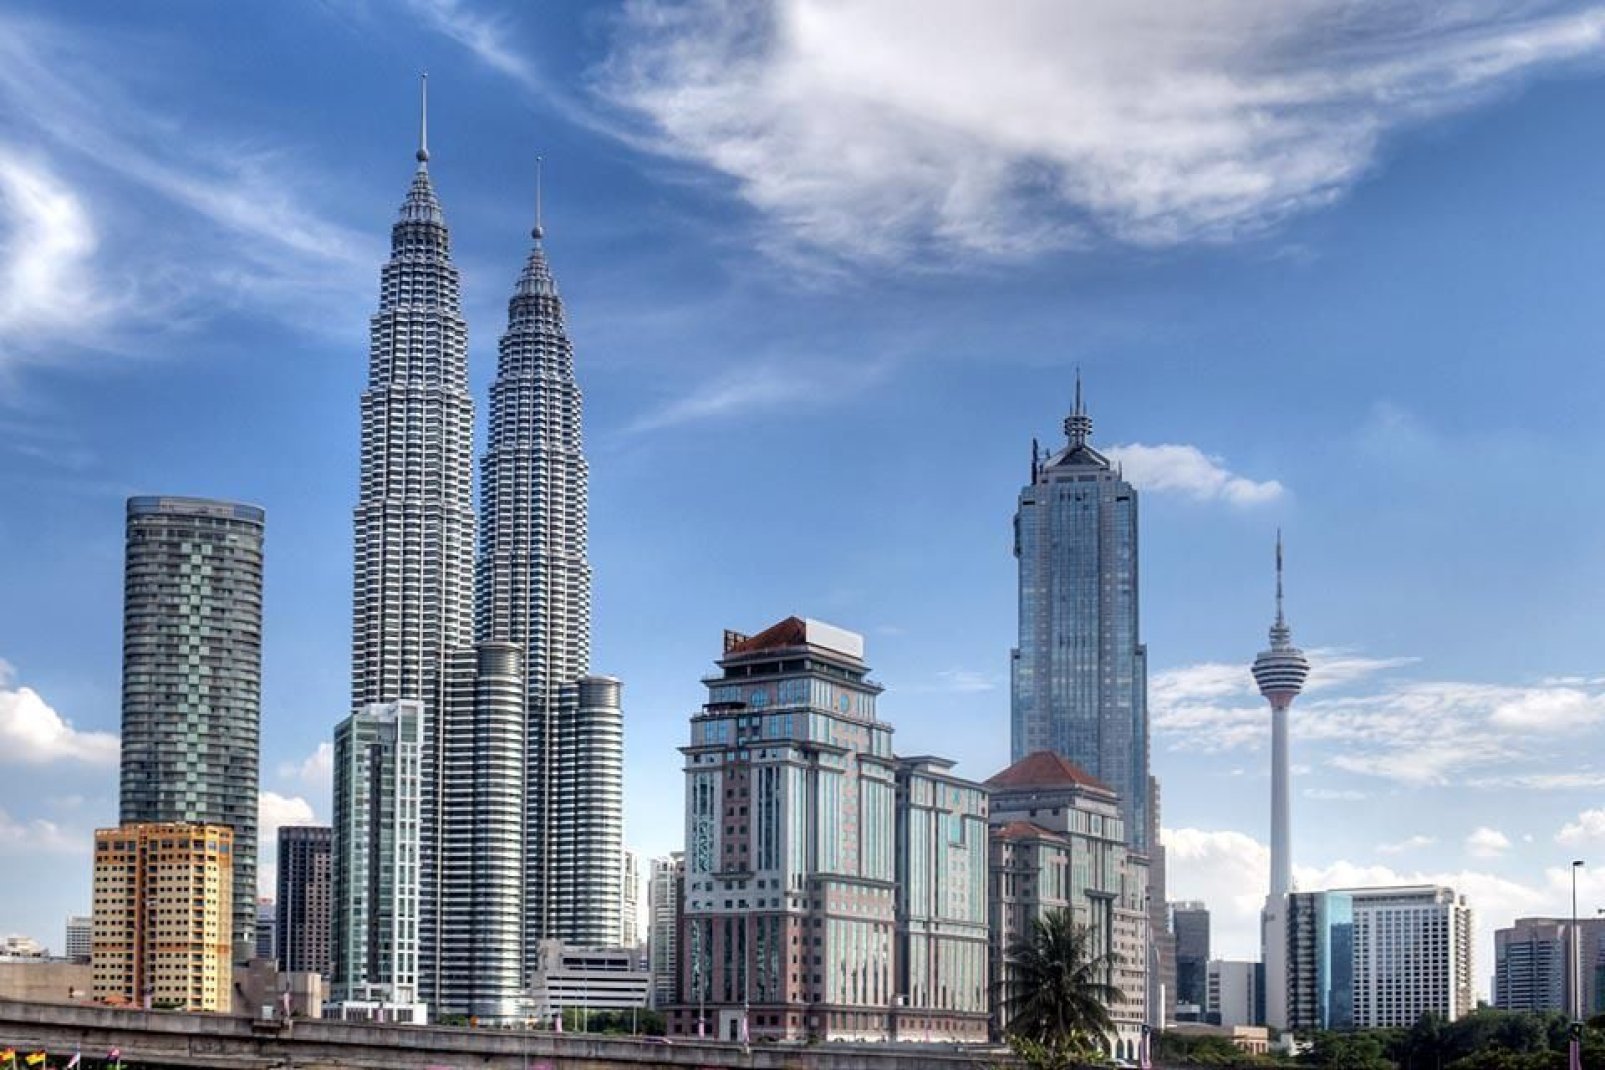 Les Tours Petronas, construites entre 1993 et 1998, sont désormais un symbole de la ville.